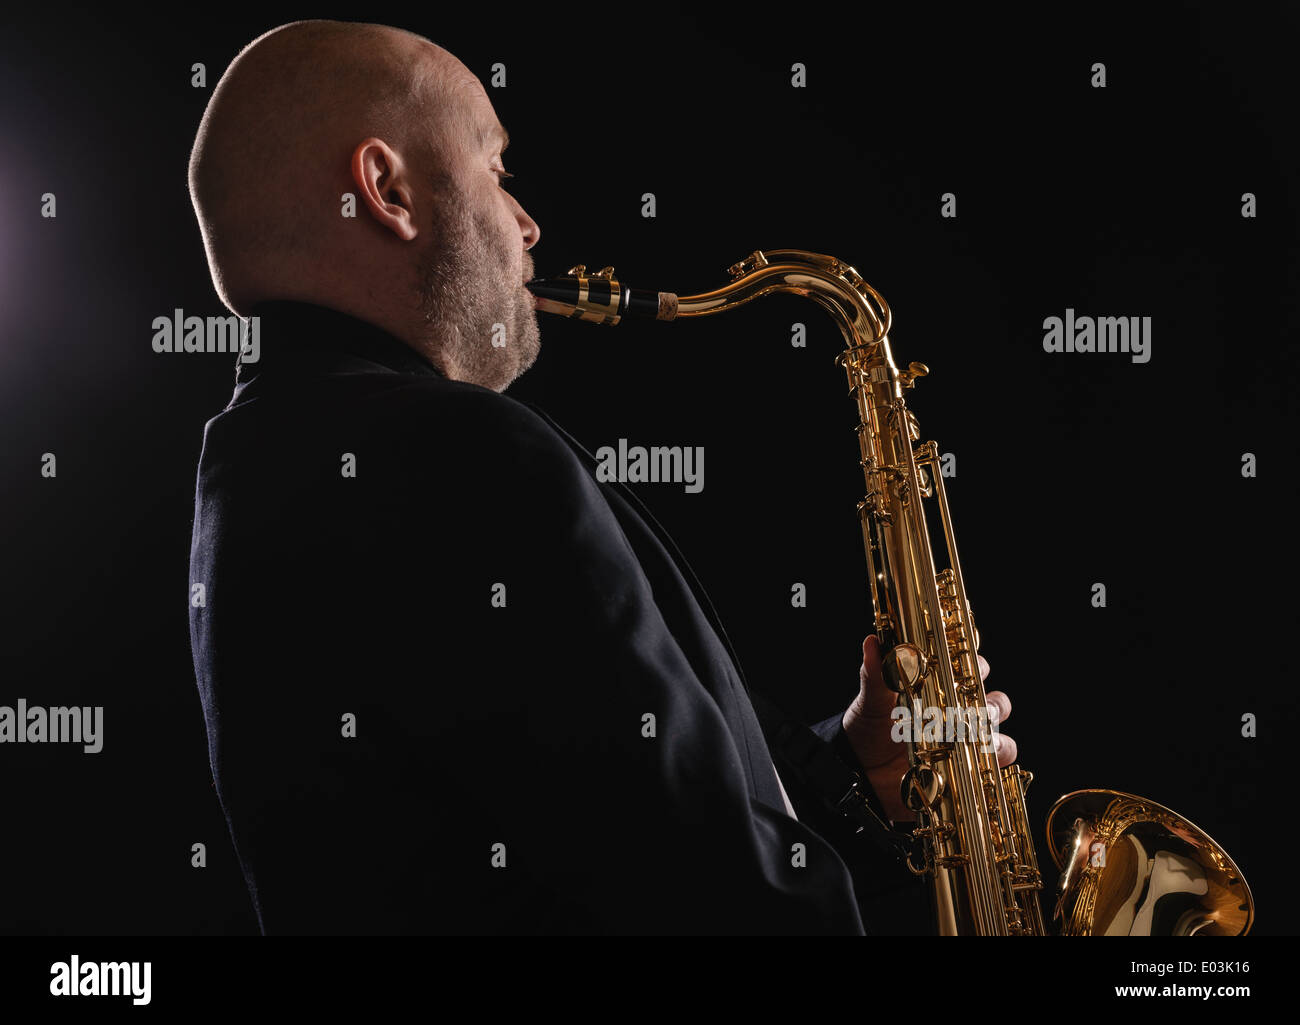 Des profils musician playing saxophone ténor, fond sombre Banque D'Images